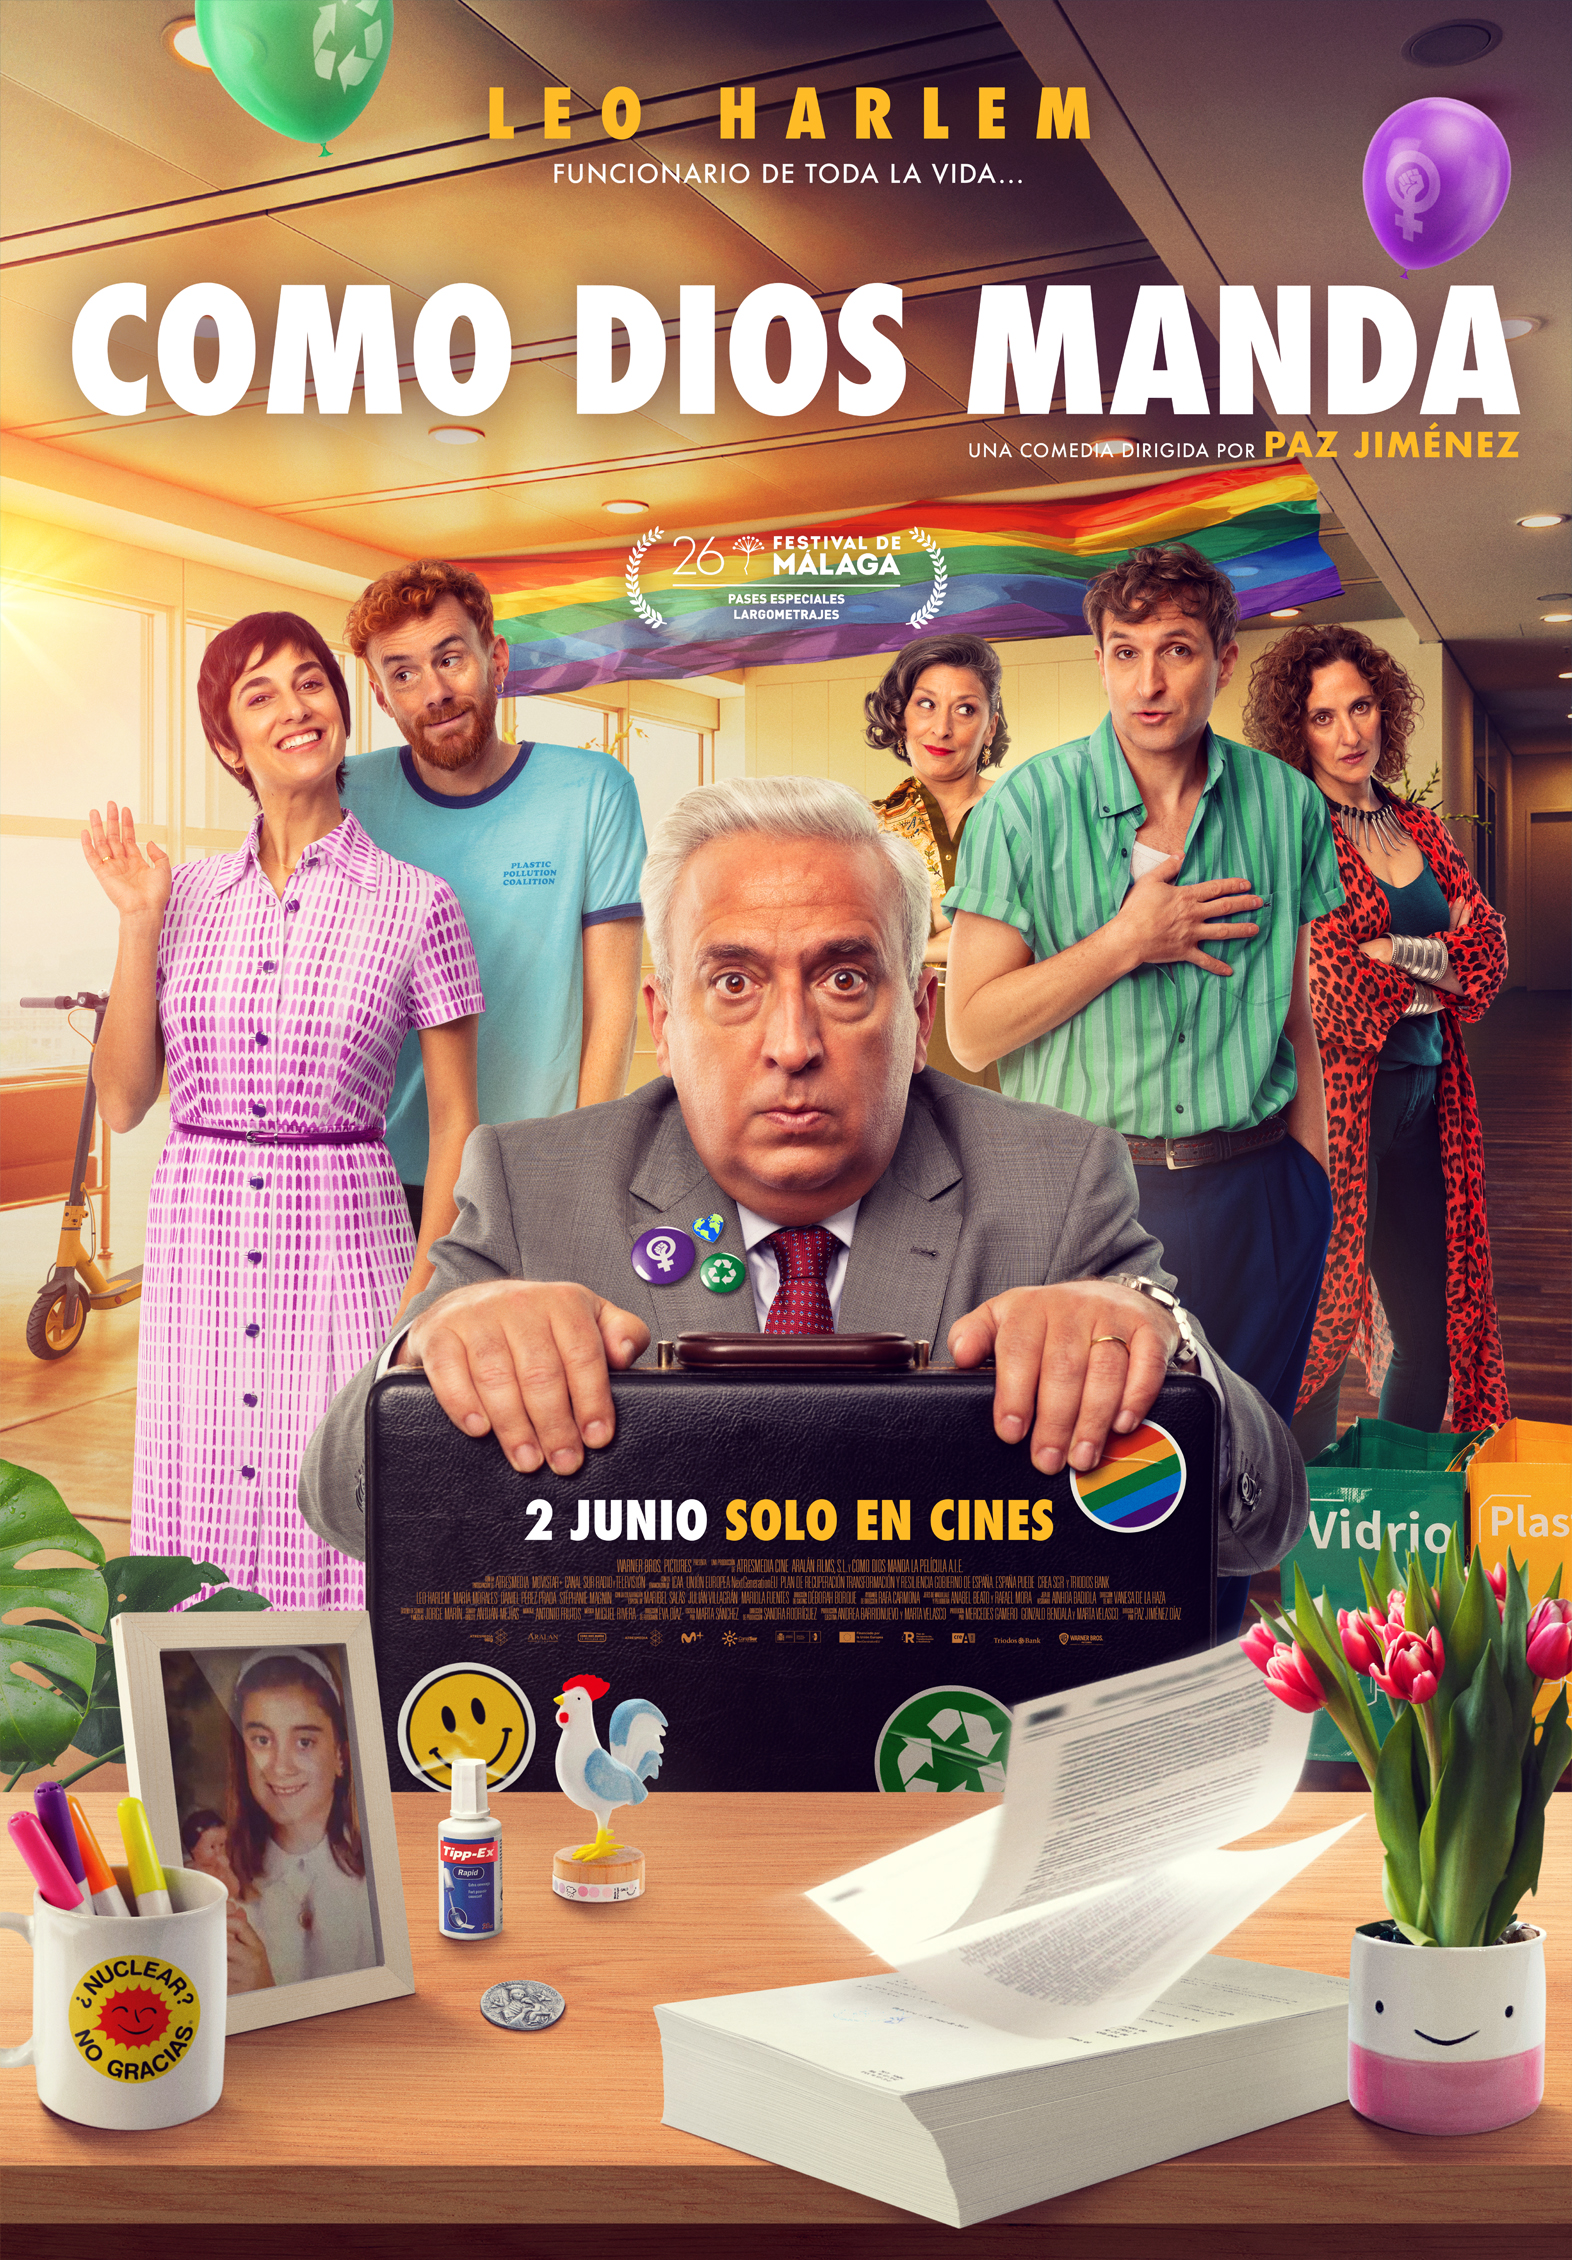 Pedro Cabañas - Design - COMO DIOS MANDA